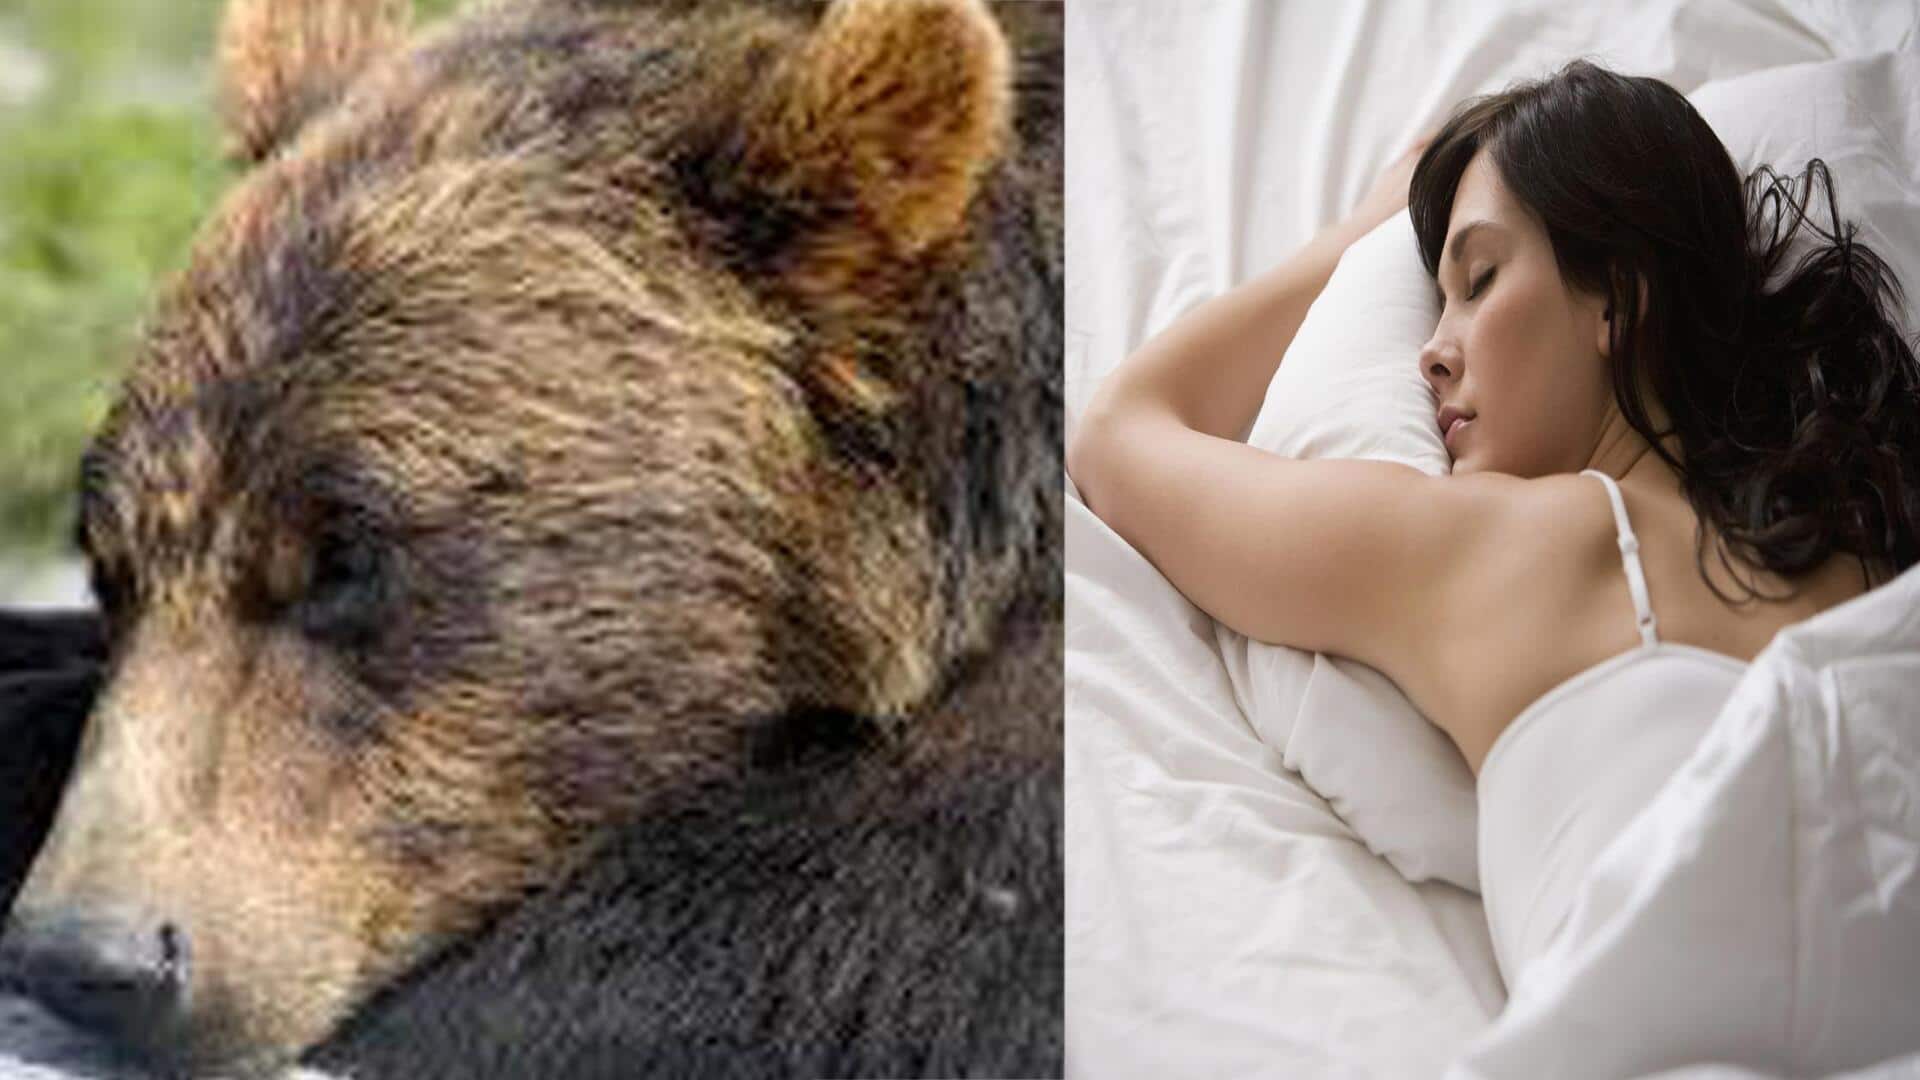 Bear Sleep:ఎలుగుబంటి నిద్ర గురించి తెలిస్తే షాక్ అవాల్సిందే.. ఎక్కువ కాలం జీవించాలంటే ఇలా చేయాలట?